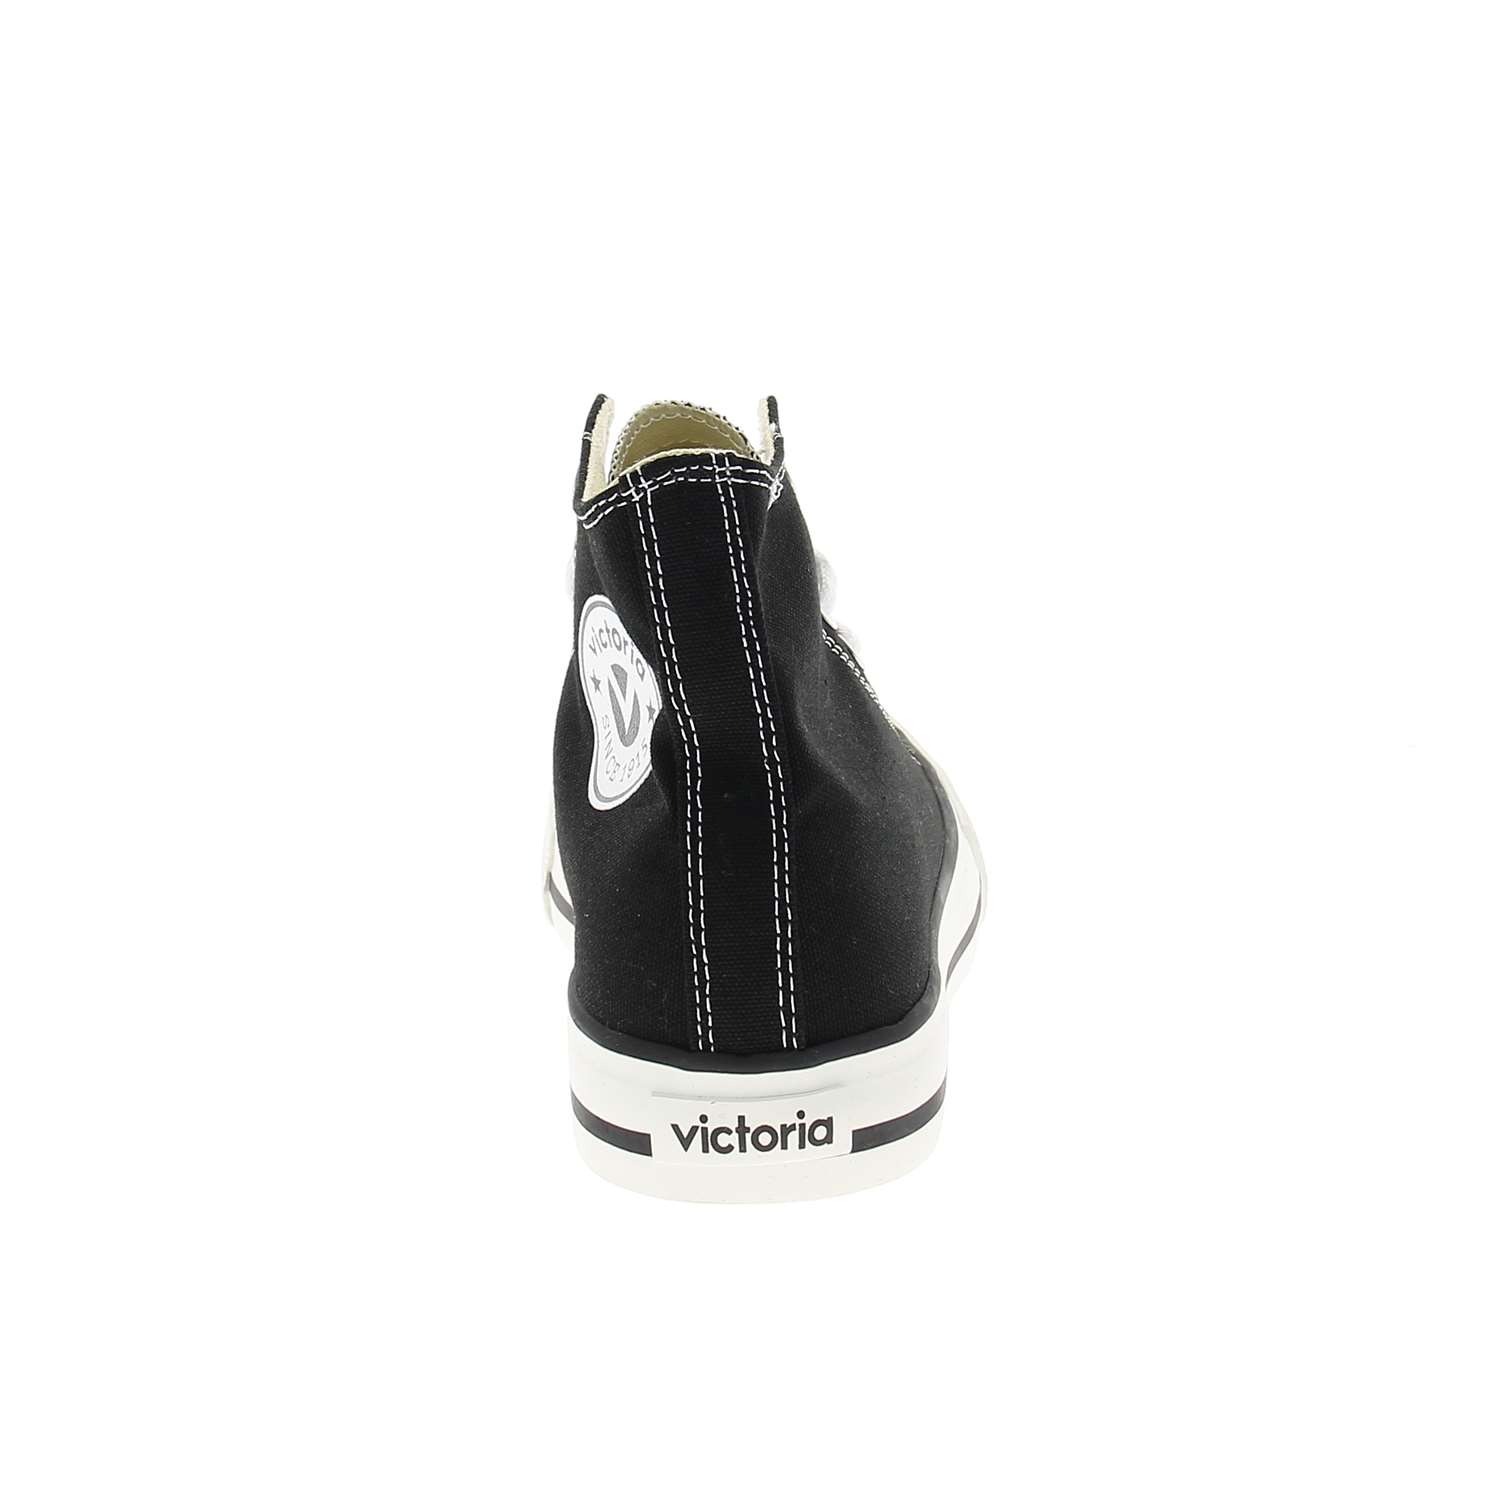 04 - TRIBU BOTIN - VICTORIA  - Chaussures à lacets - Textile